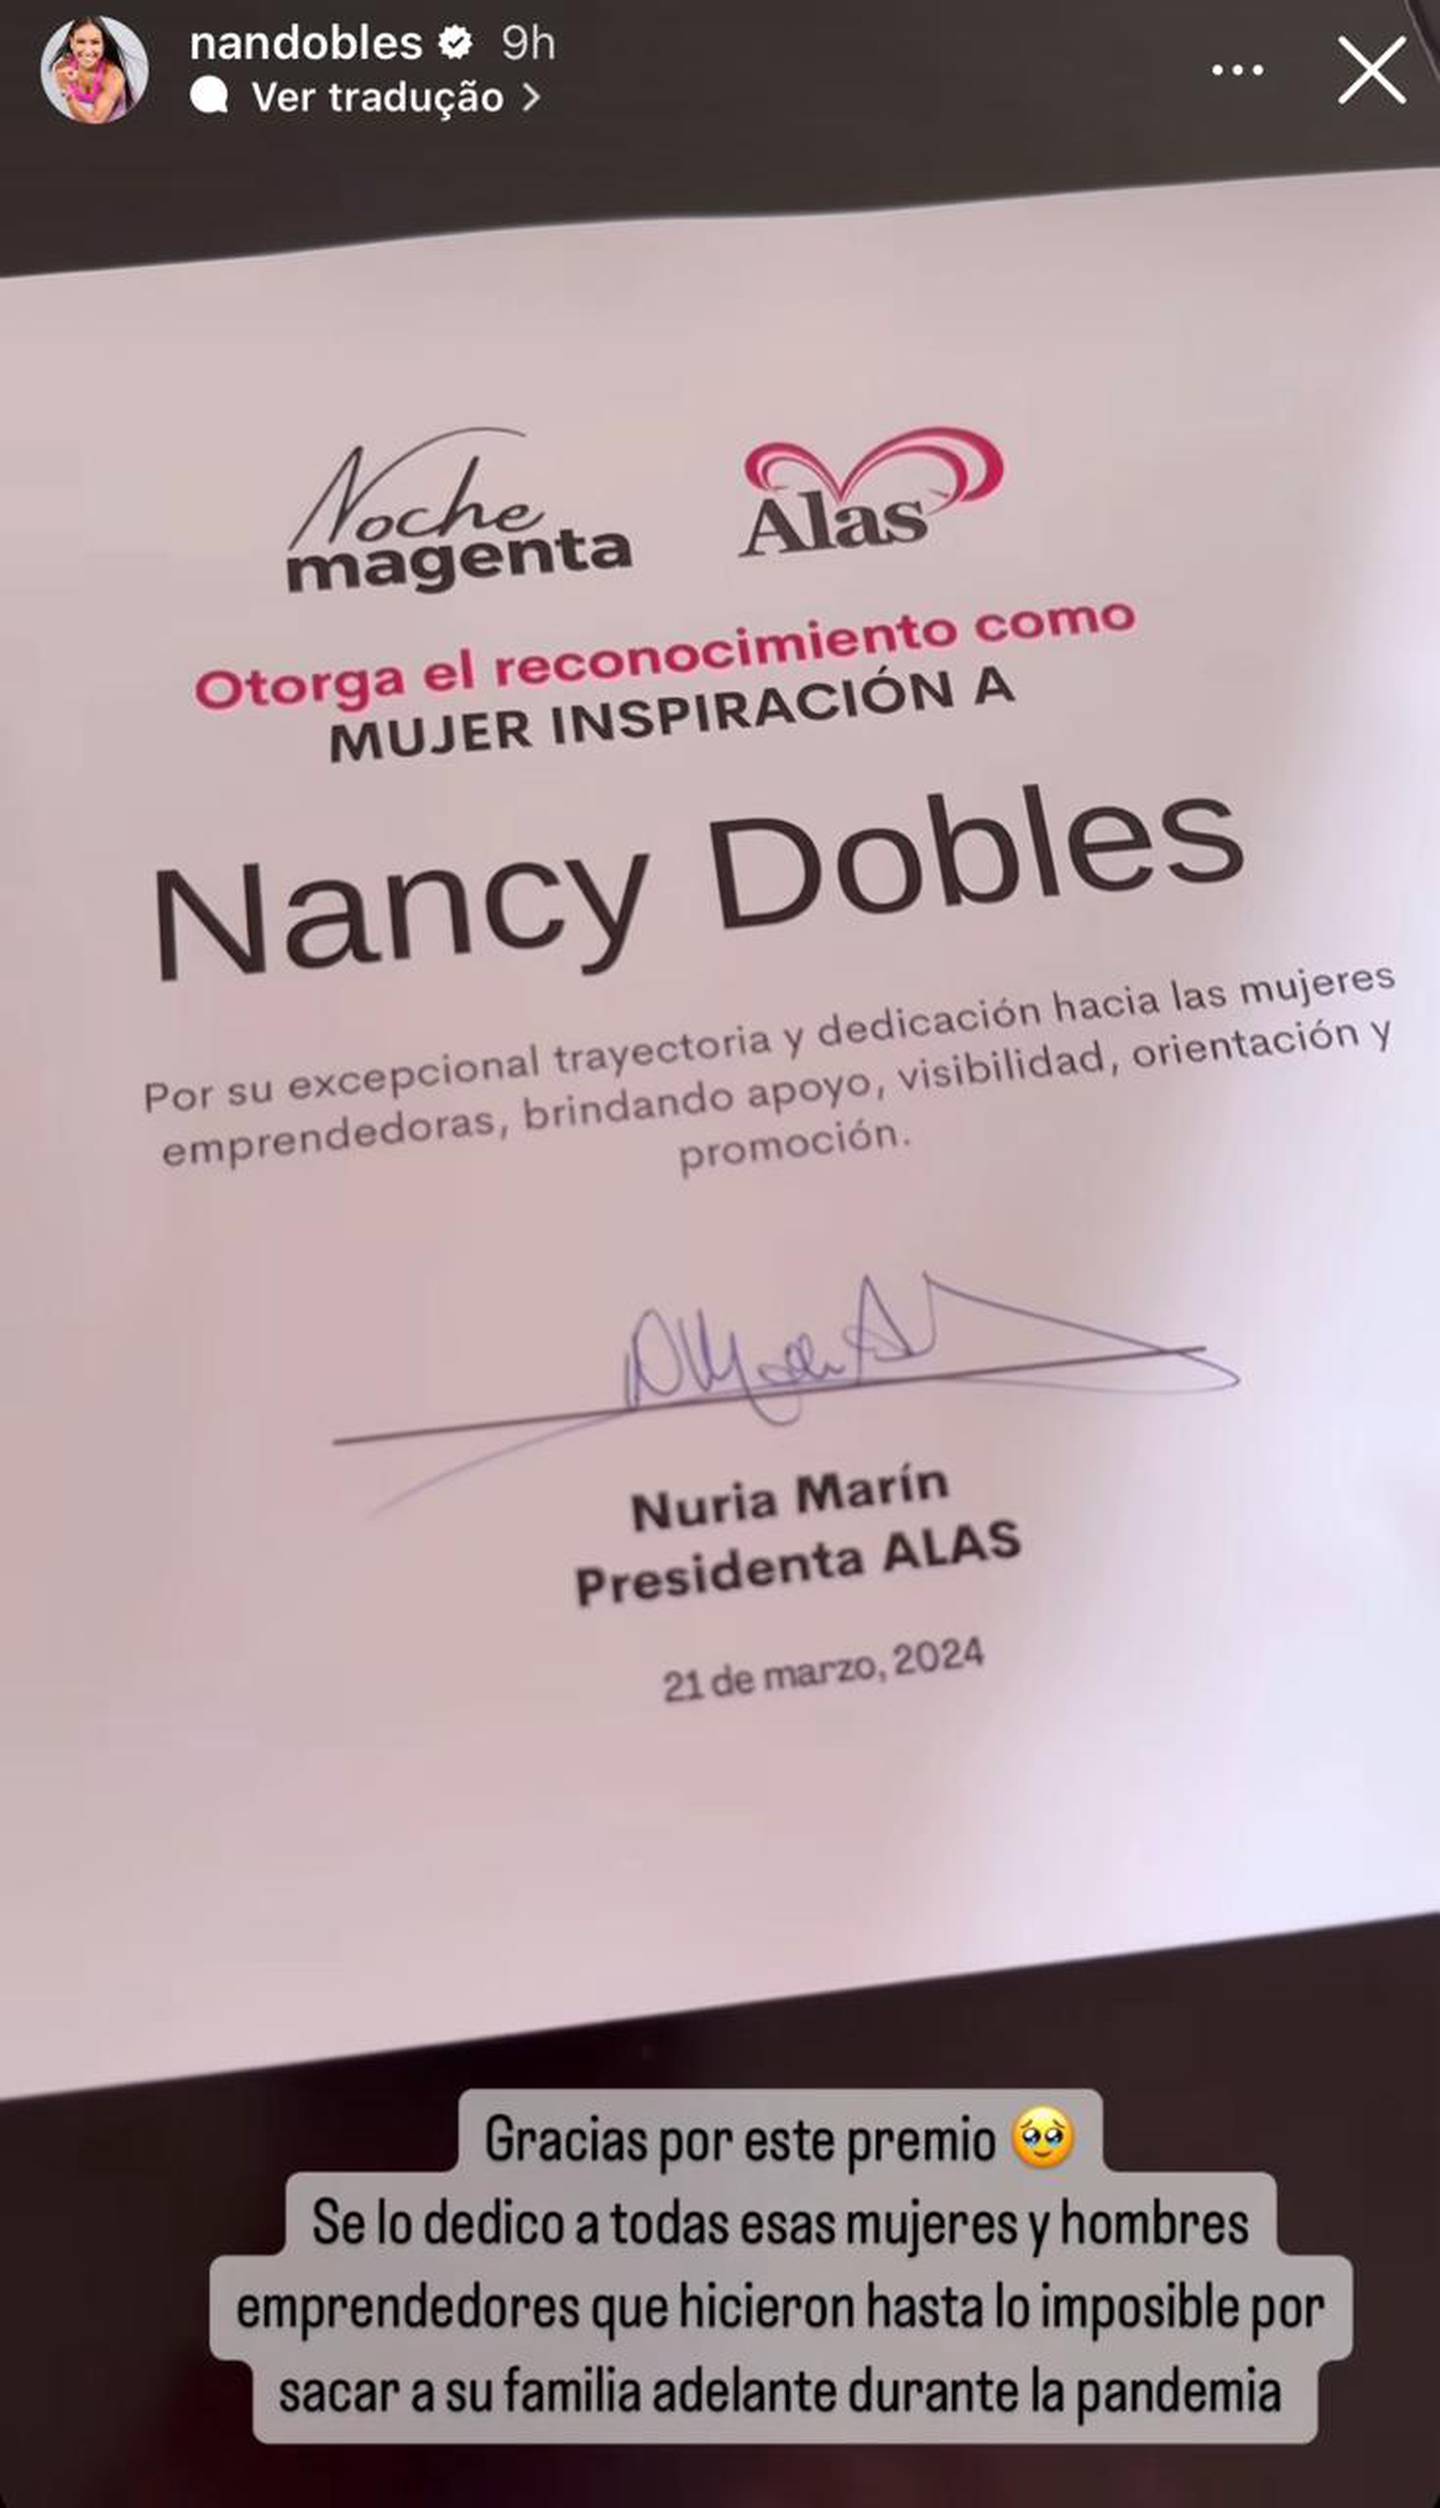 Nancy Dobles
Asociación Alas
Teletica
canal 7